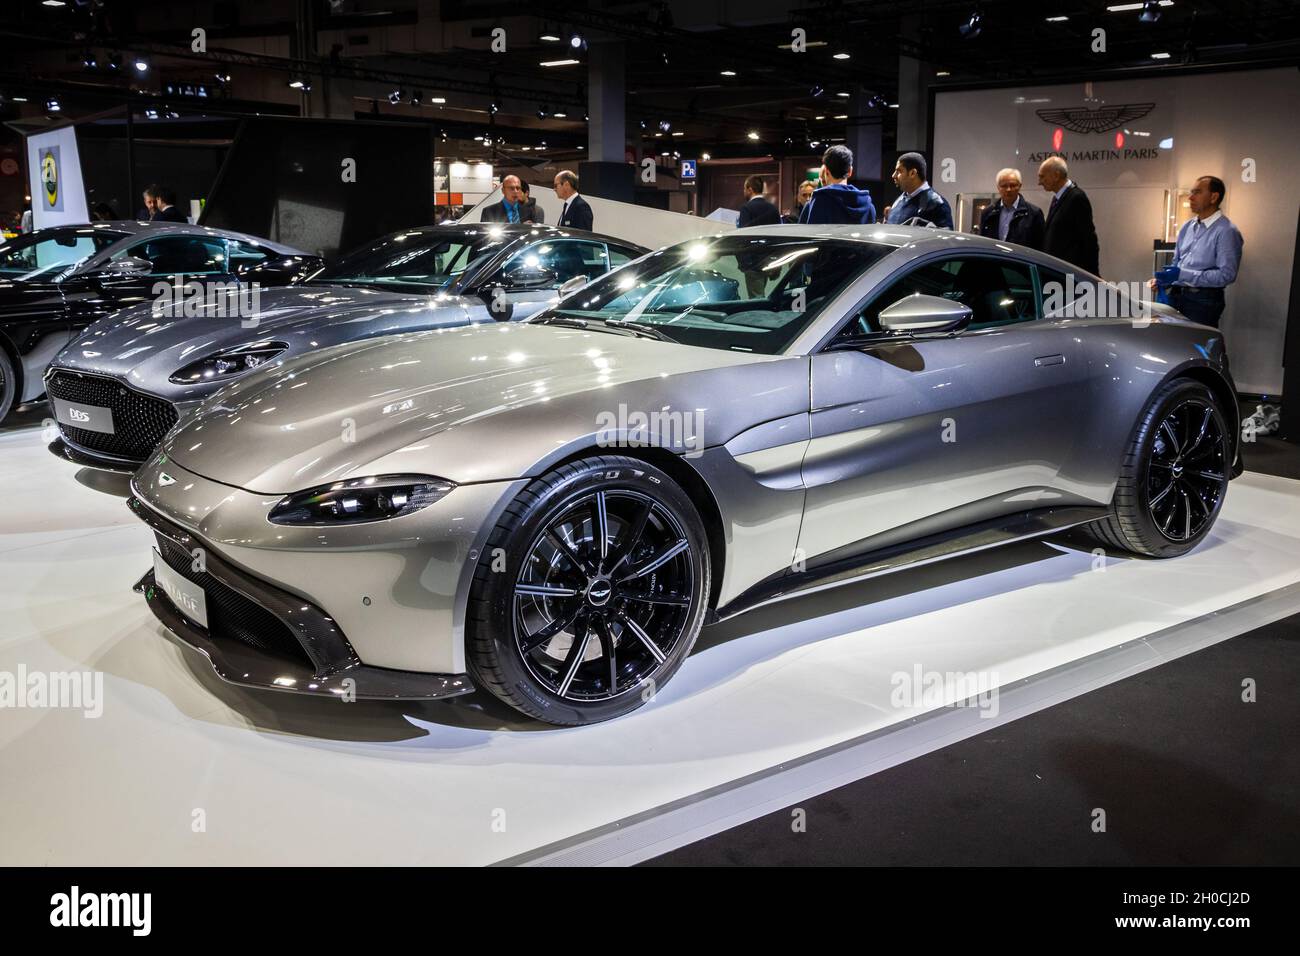 Der Sportwagen Aston Martin Vantage wurde auf dem Pariser Automobilsalon präsentiert. Paris, Frankreich - 2. Oktober 2018. Stockfoto